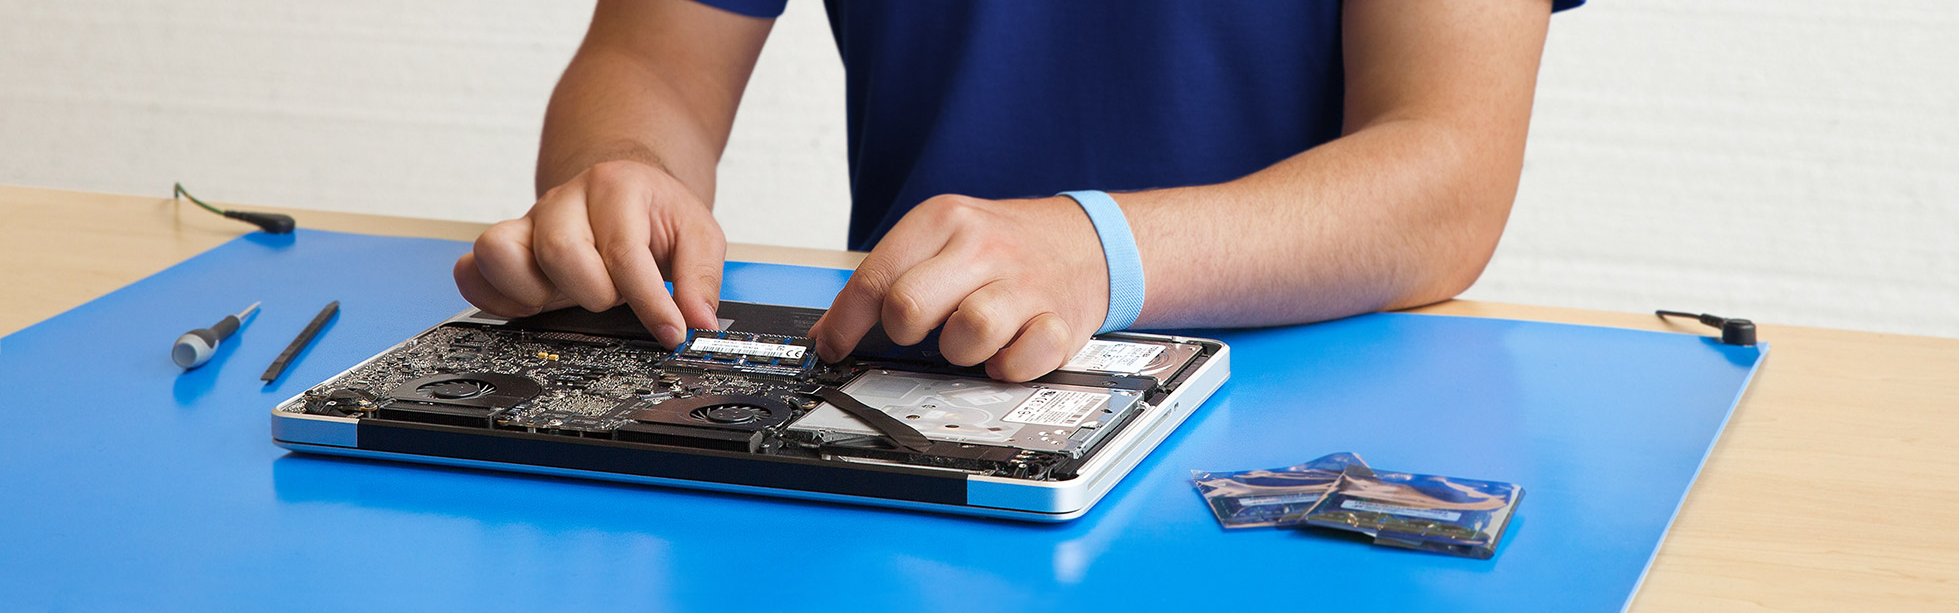 Macbook repair services in dubai